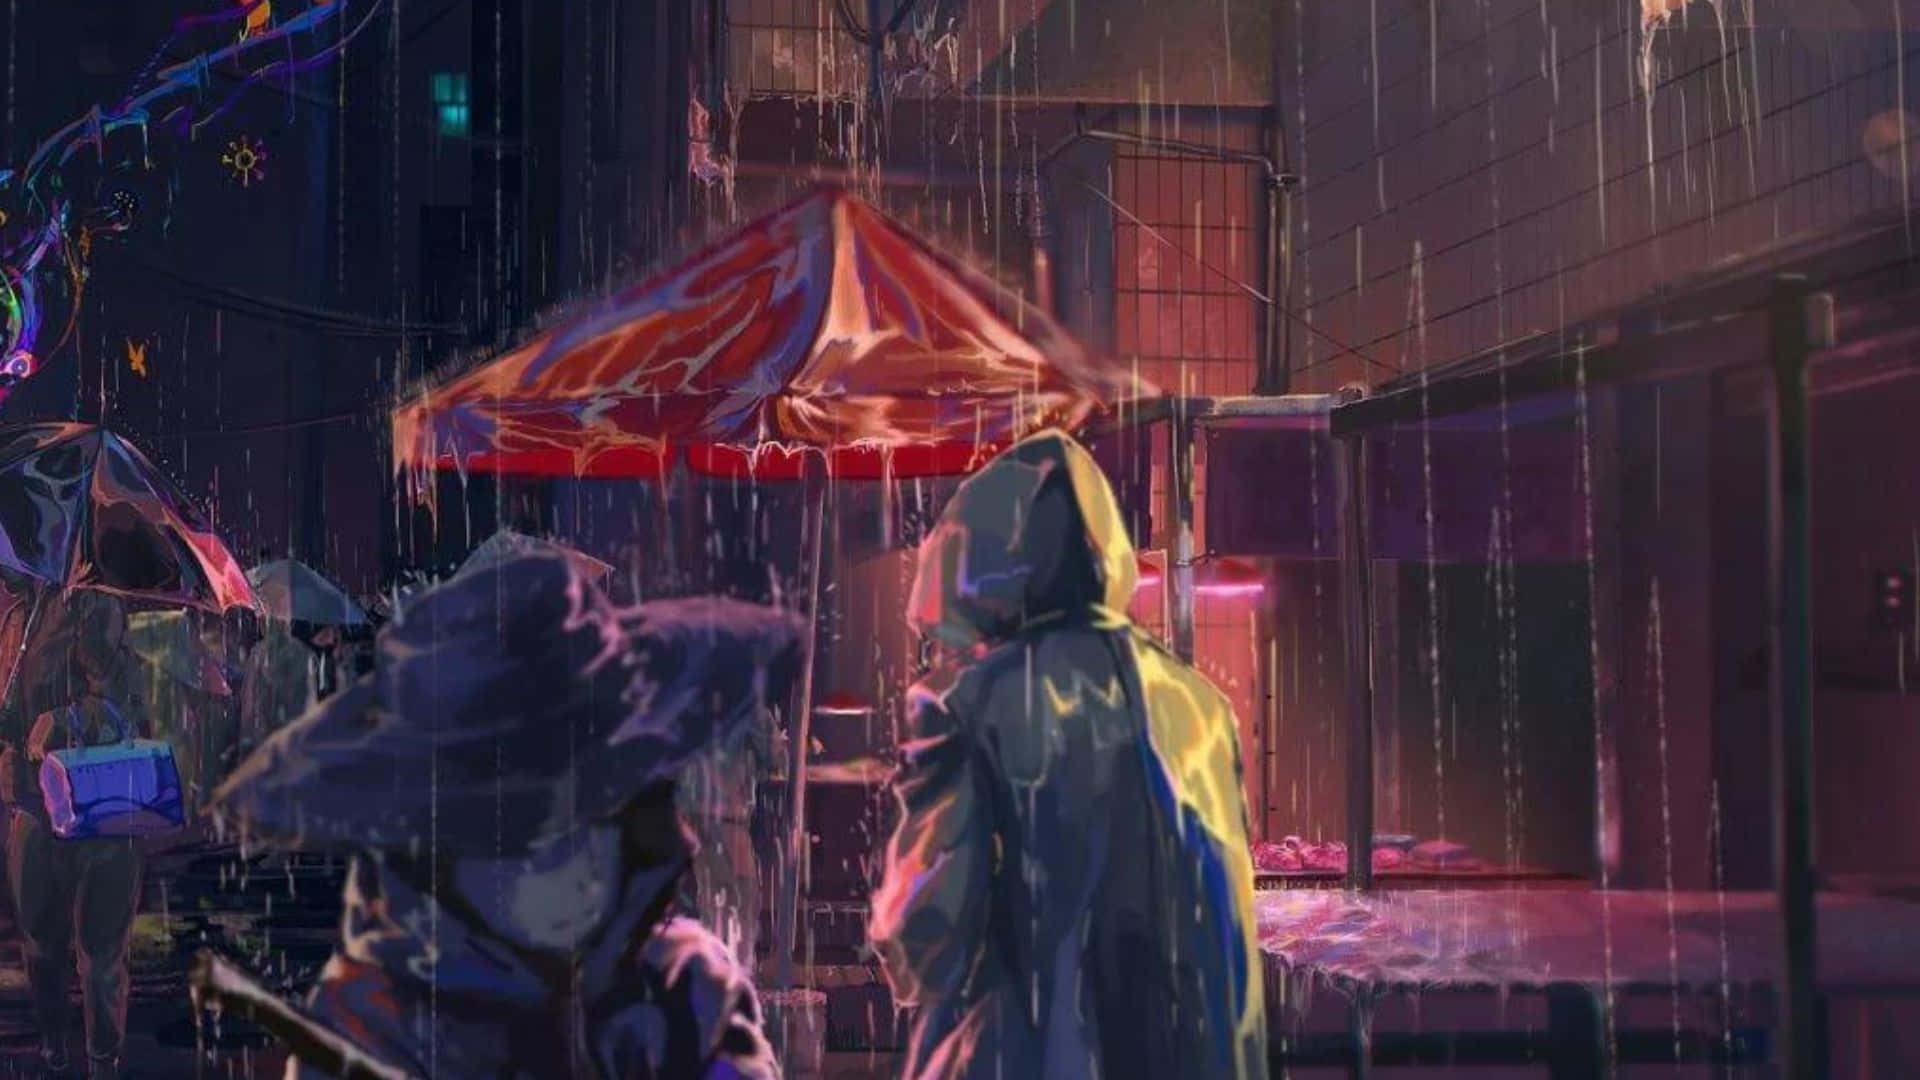 Fondode Pantalla De Personas Caminando Bajo La Lluvia En Un Día De Anime En La Calle.